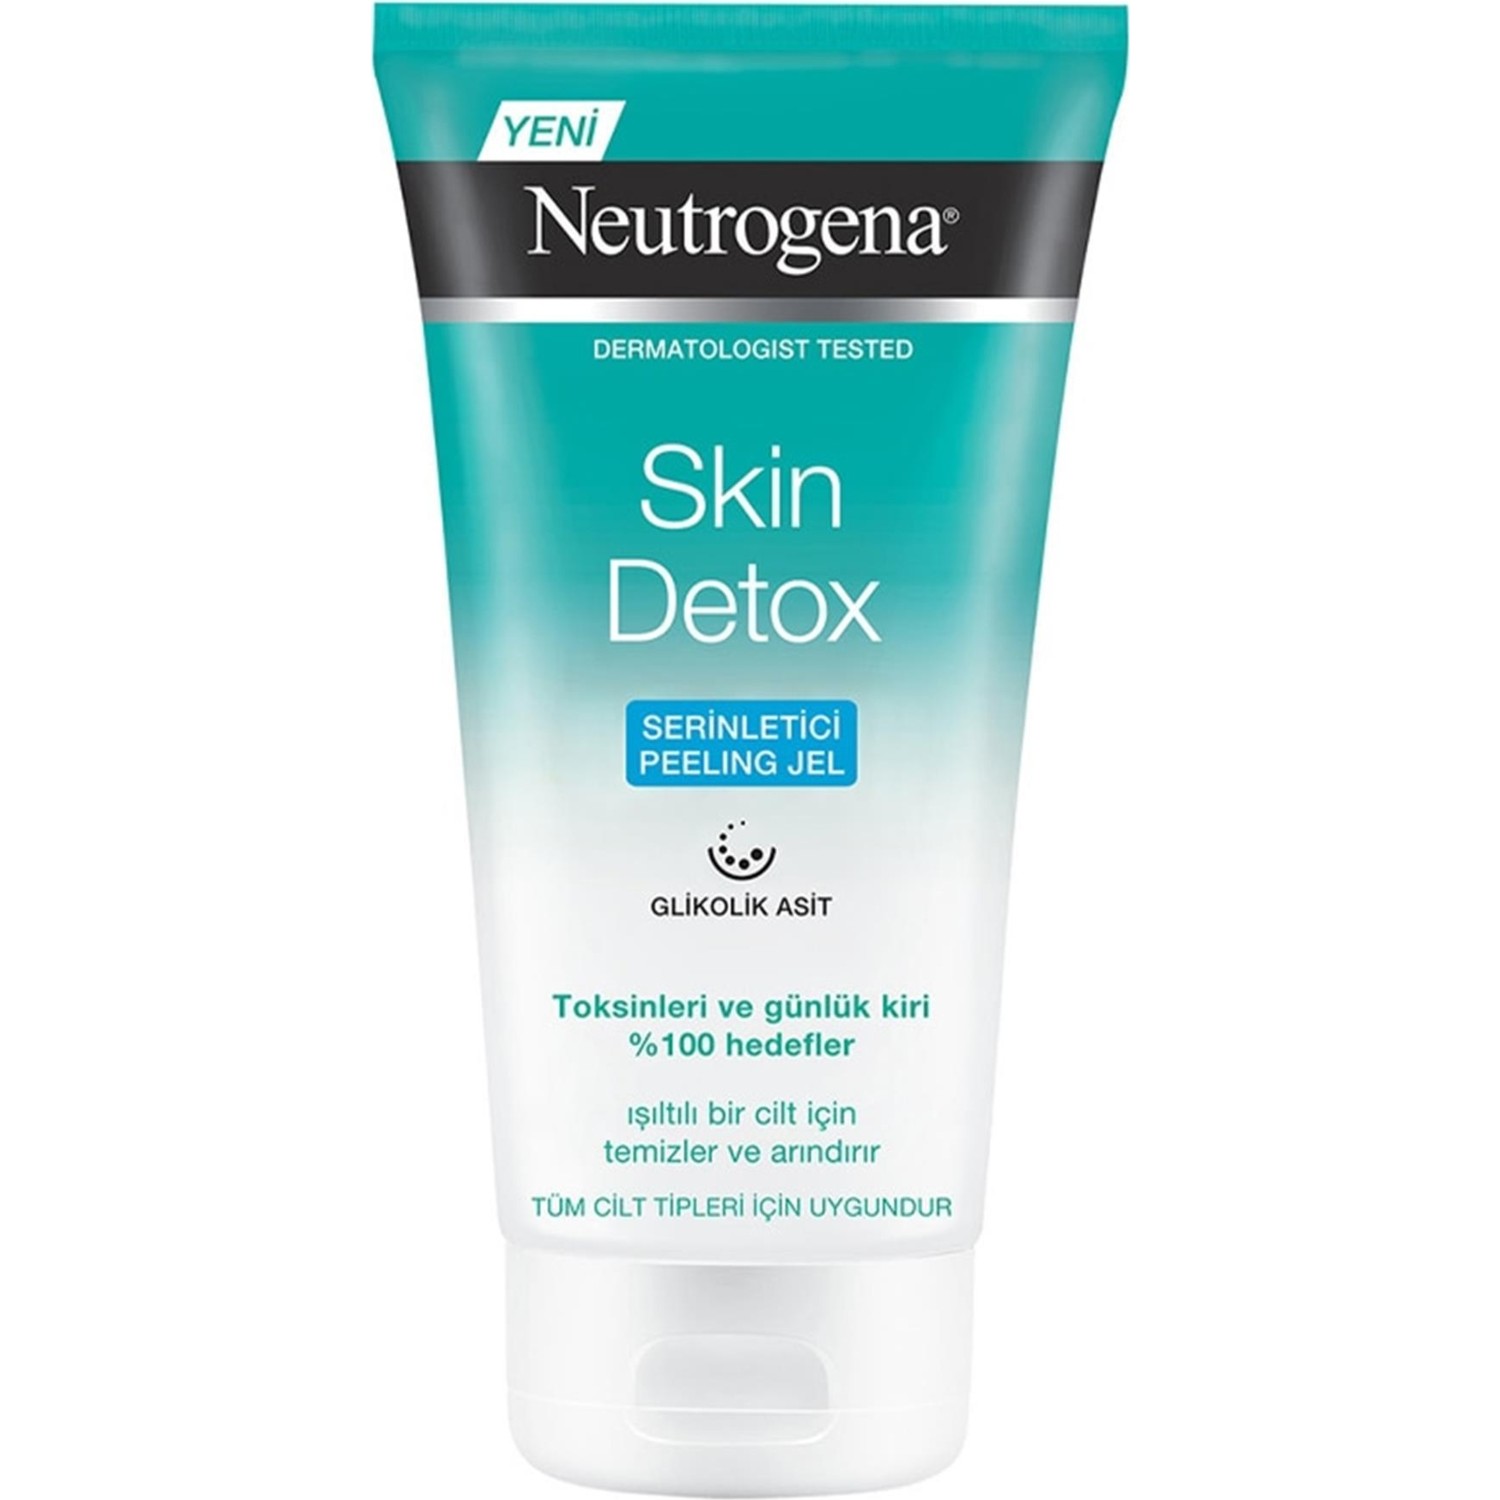 Освежающий пилинг-гель Neutrogena Skin Detox, 150 мл освежающий пилинг гель neutrogena skin detox 150 мл 2 шт